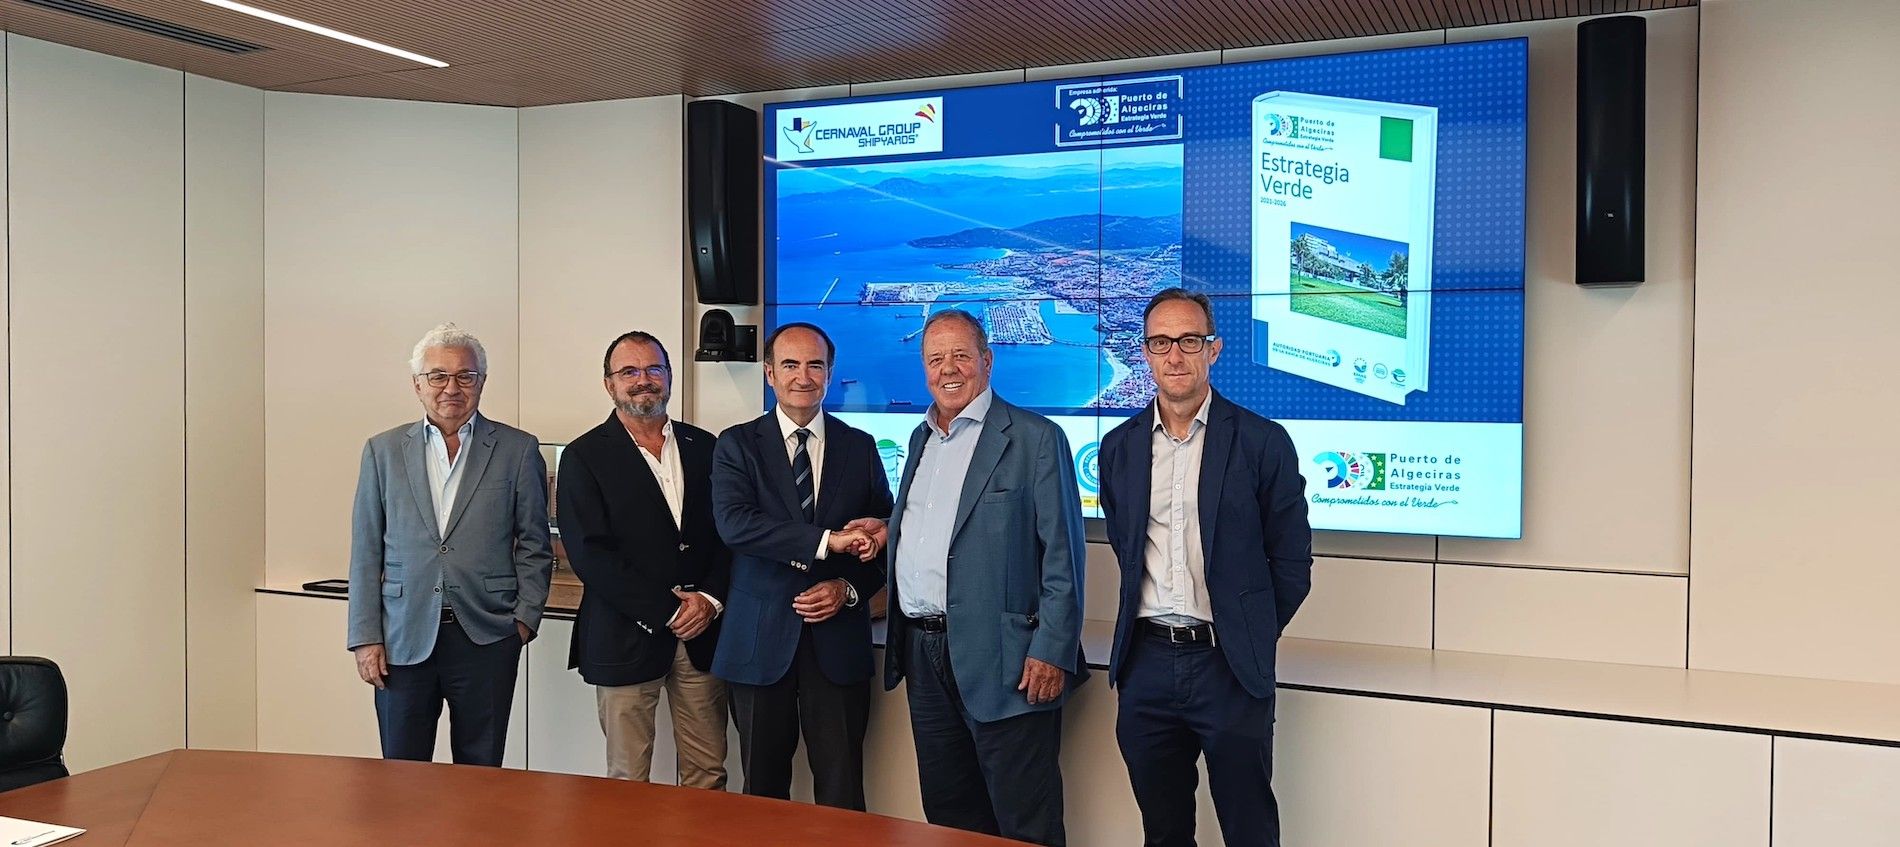 firma acuerdo Cernaval estrategia verde del puerto de Algeciras